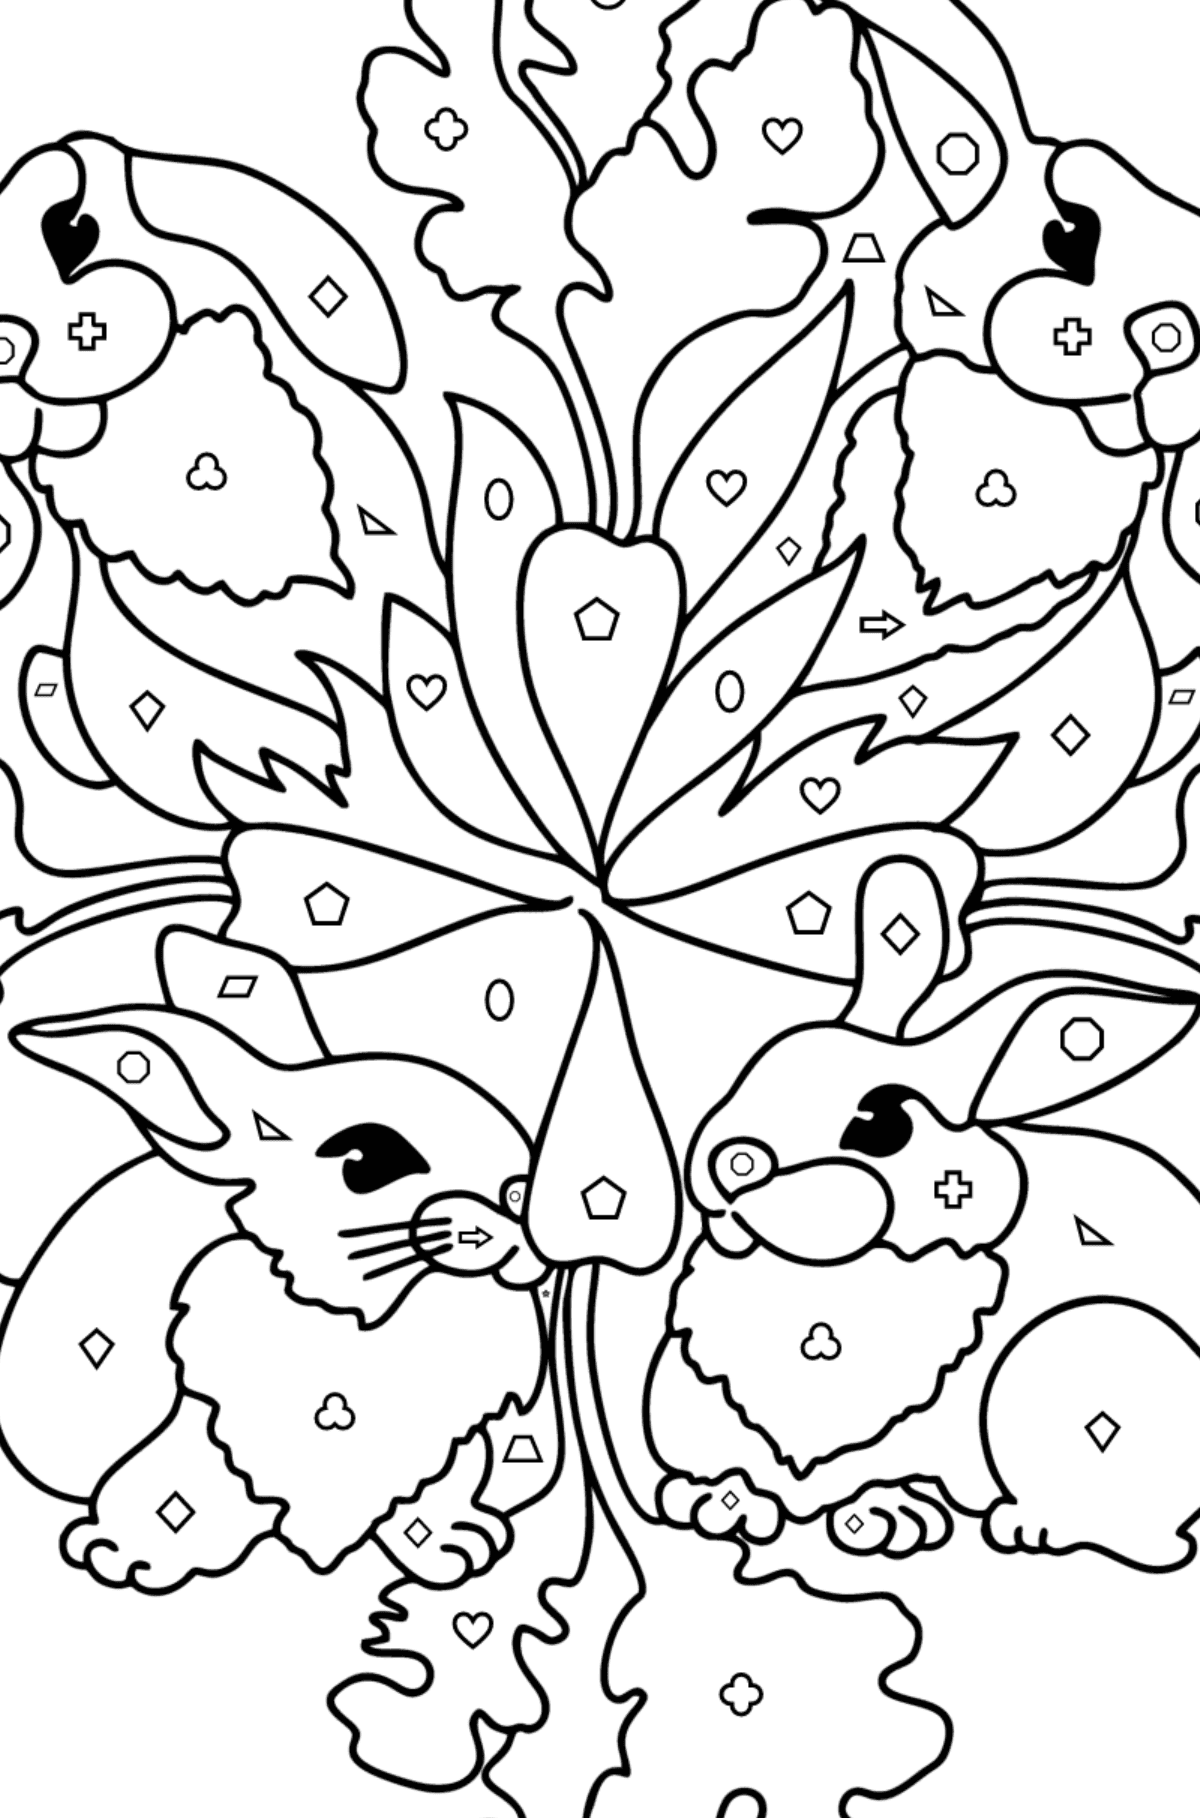 Kleurplaat mandala konijntje - Kleuren met geometrische figuren voor kinderen